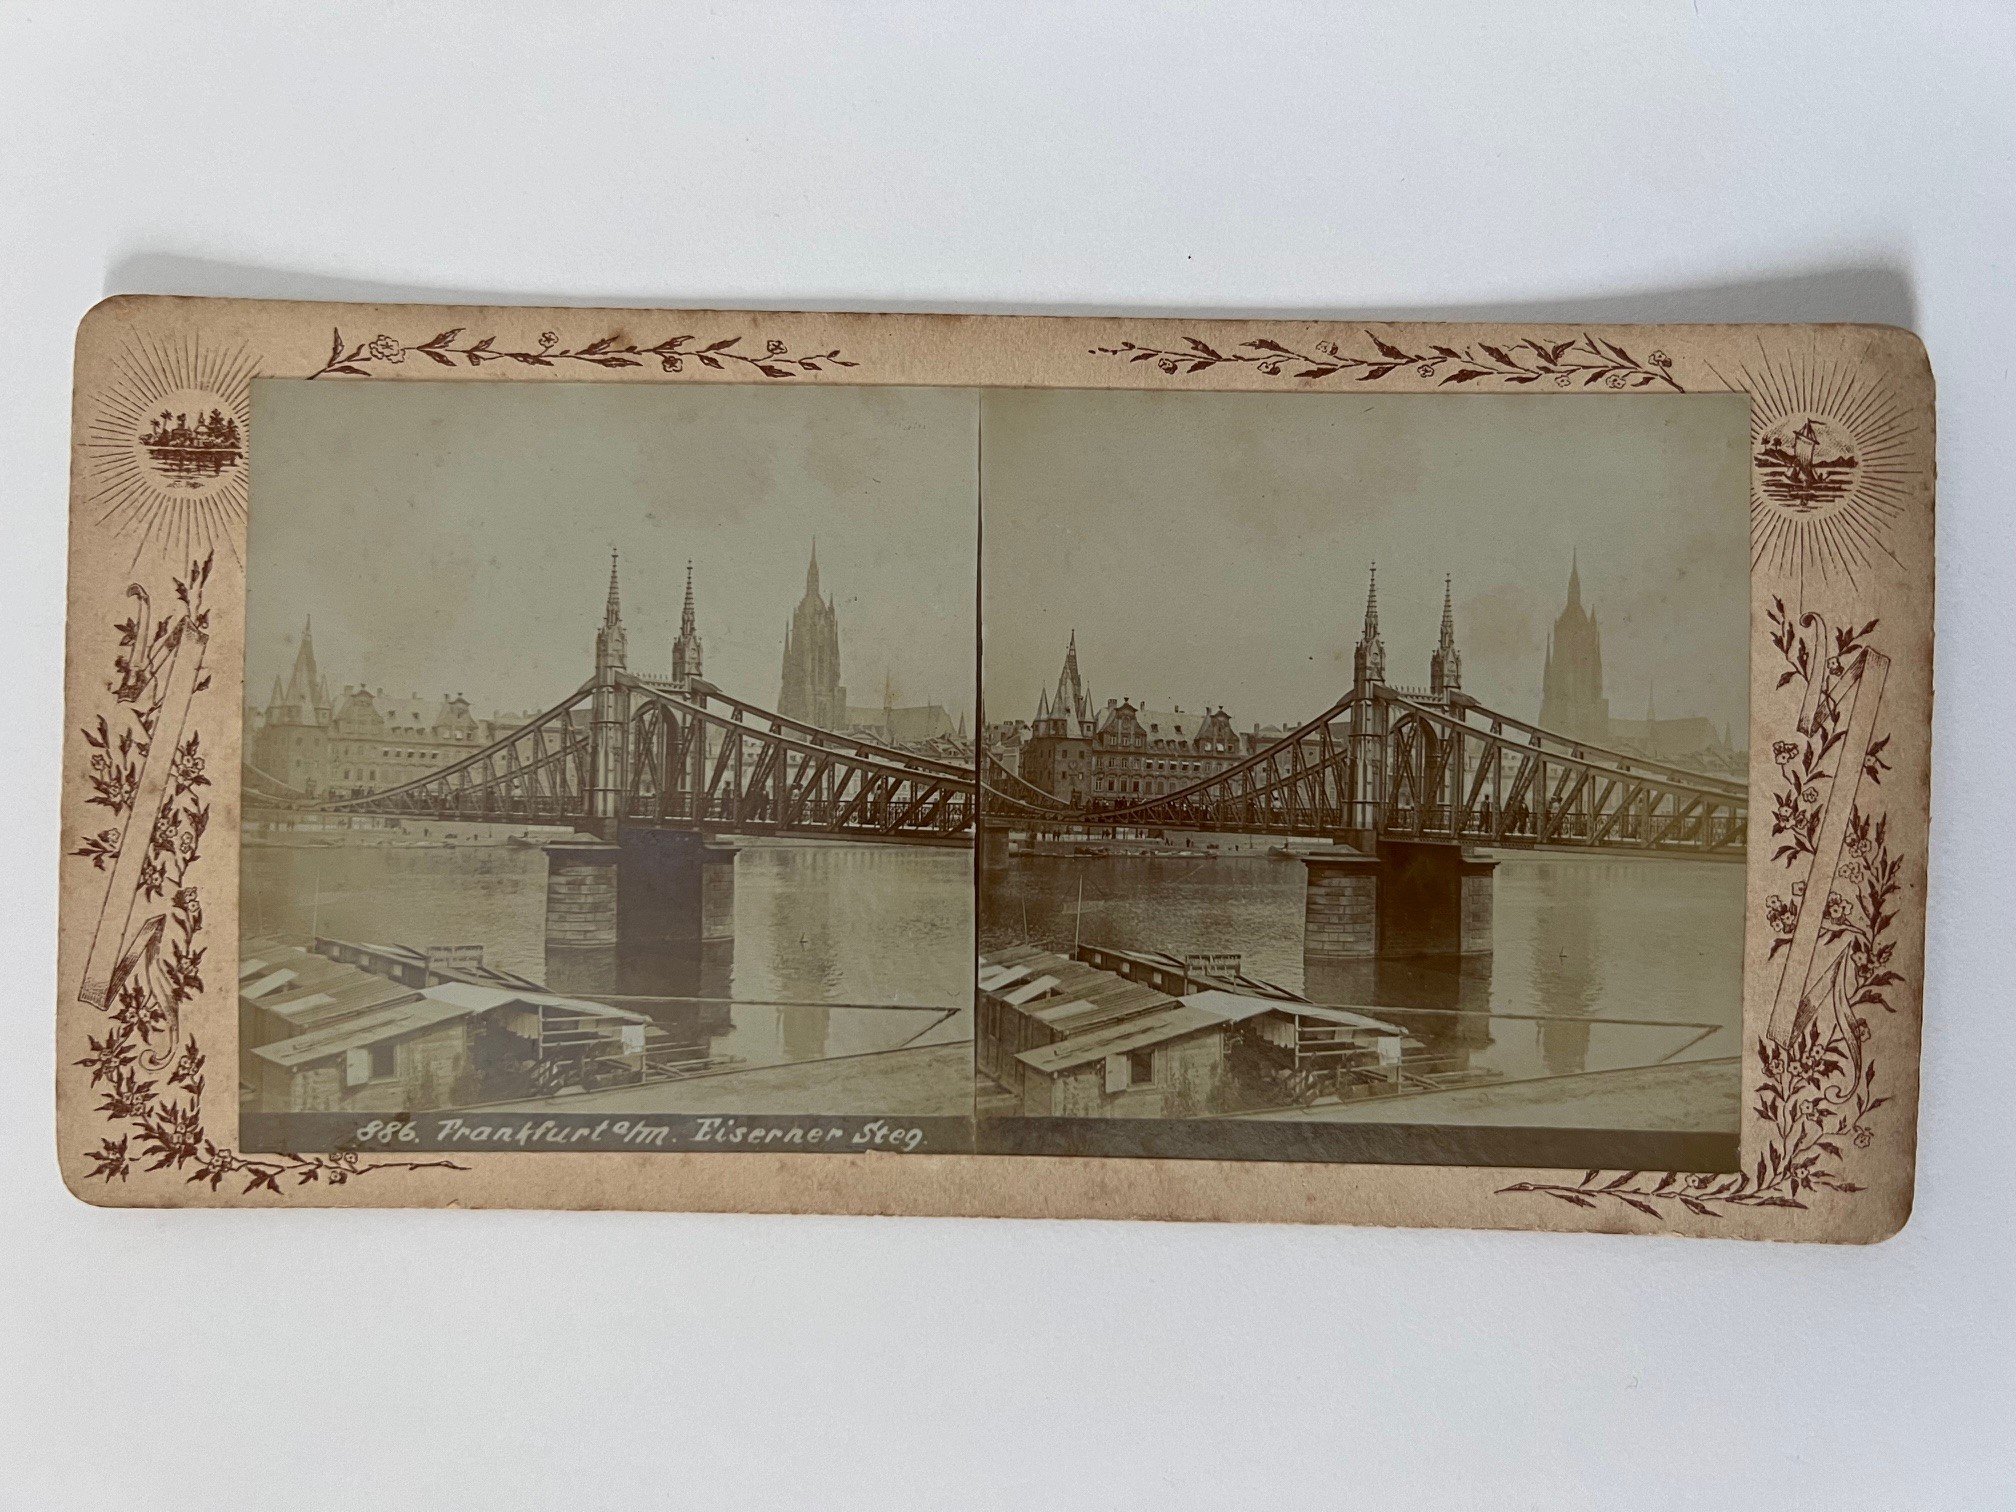 Stereobild, Unbekannter Fotograf, Frankfurt, Eiserner Steg, ca. 1905. (Taunus-Rhein-Main - Regionalgeschichtliche Sammlung Dr. Stefan Naas CC BY-NC-SA)